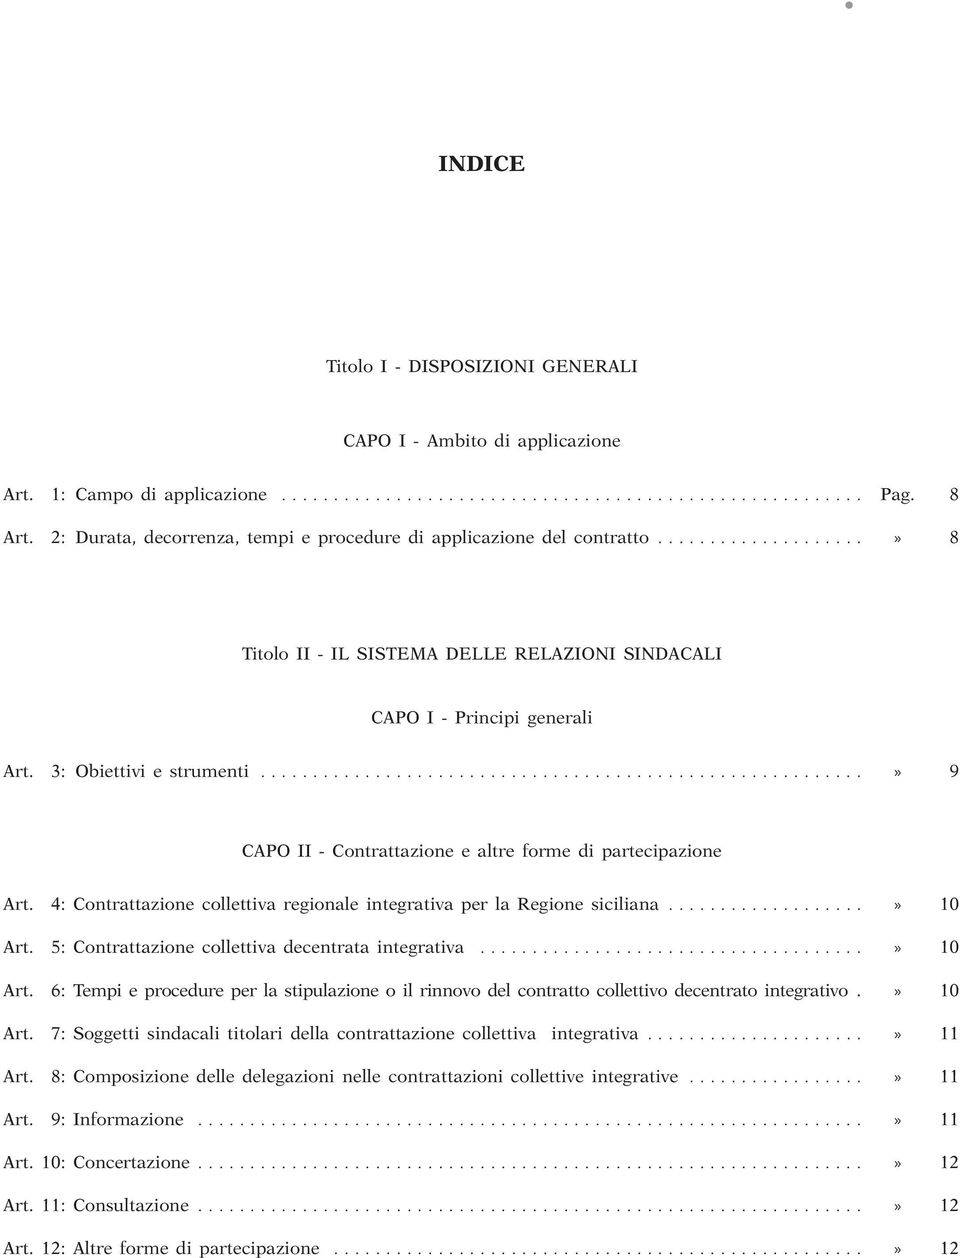 integrativa per la Regione siciliana» 10 Art 5: Contrattazione collettiva decentrata integrativa» 10 Art 6: Tempi e procedure per la stipulazione o il rinnovo del contratto collettivo decentrato